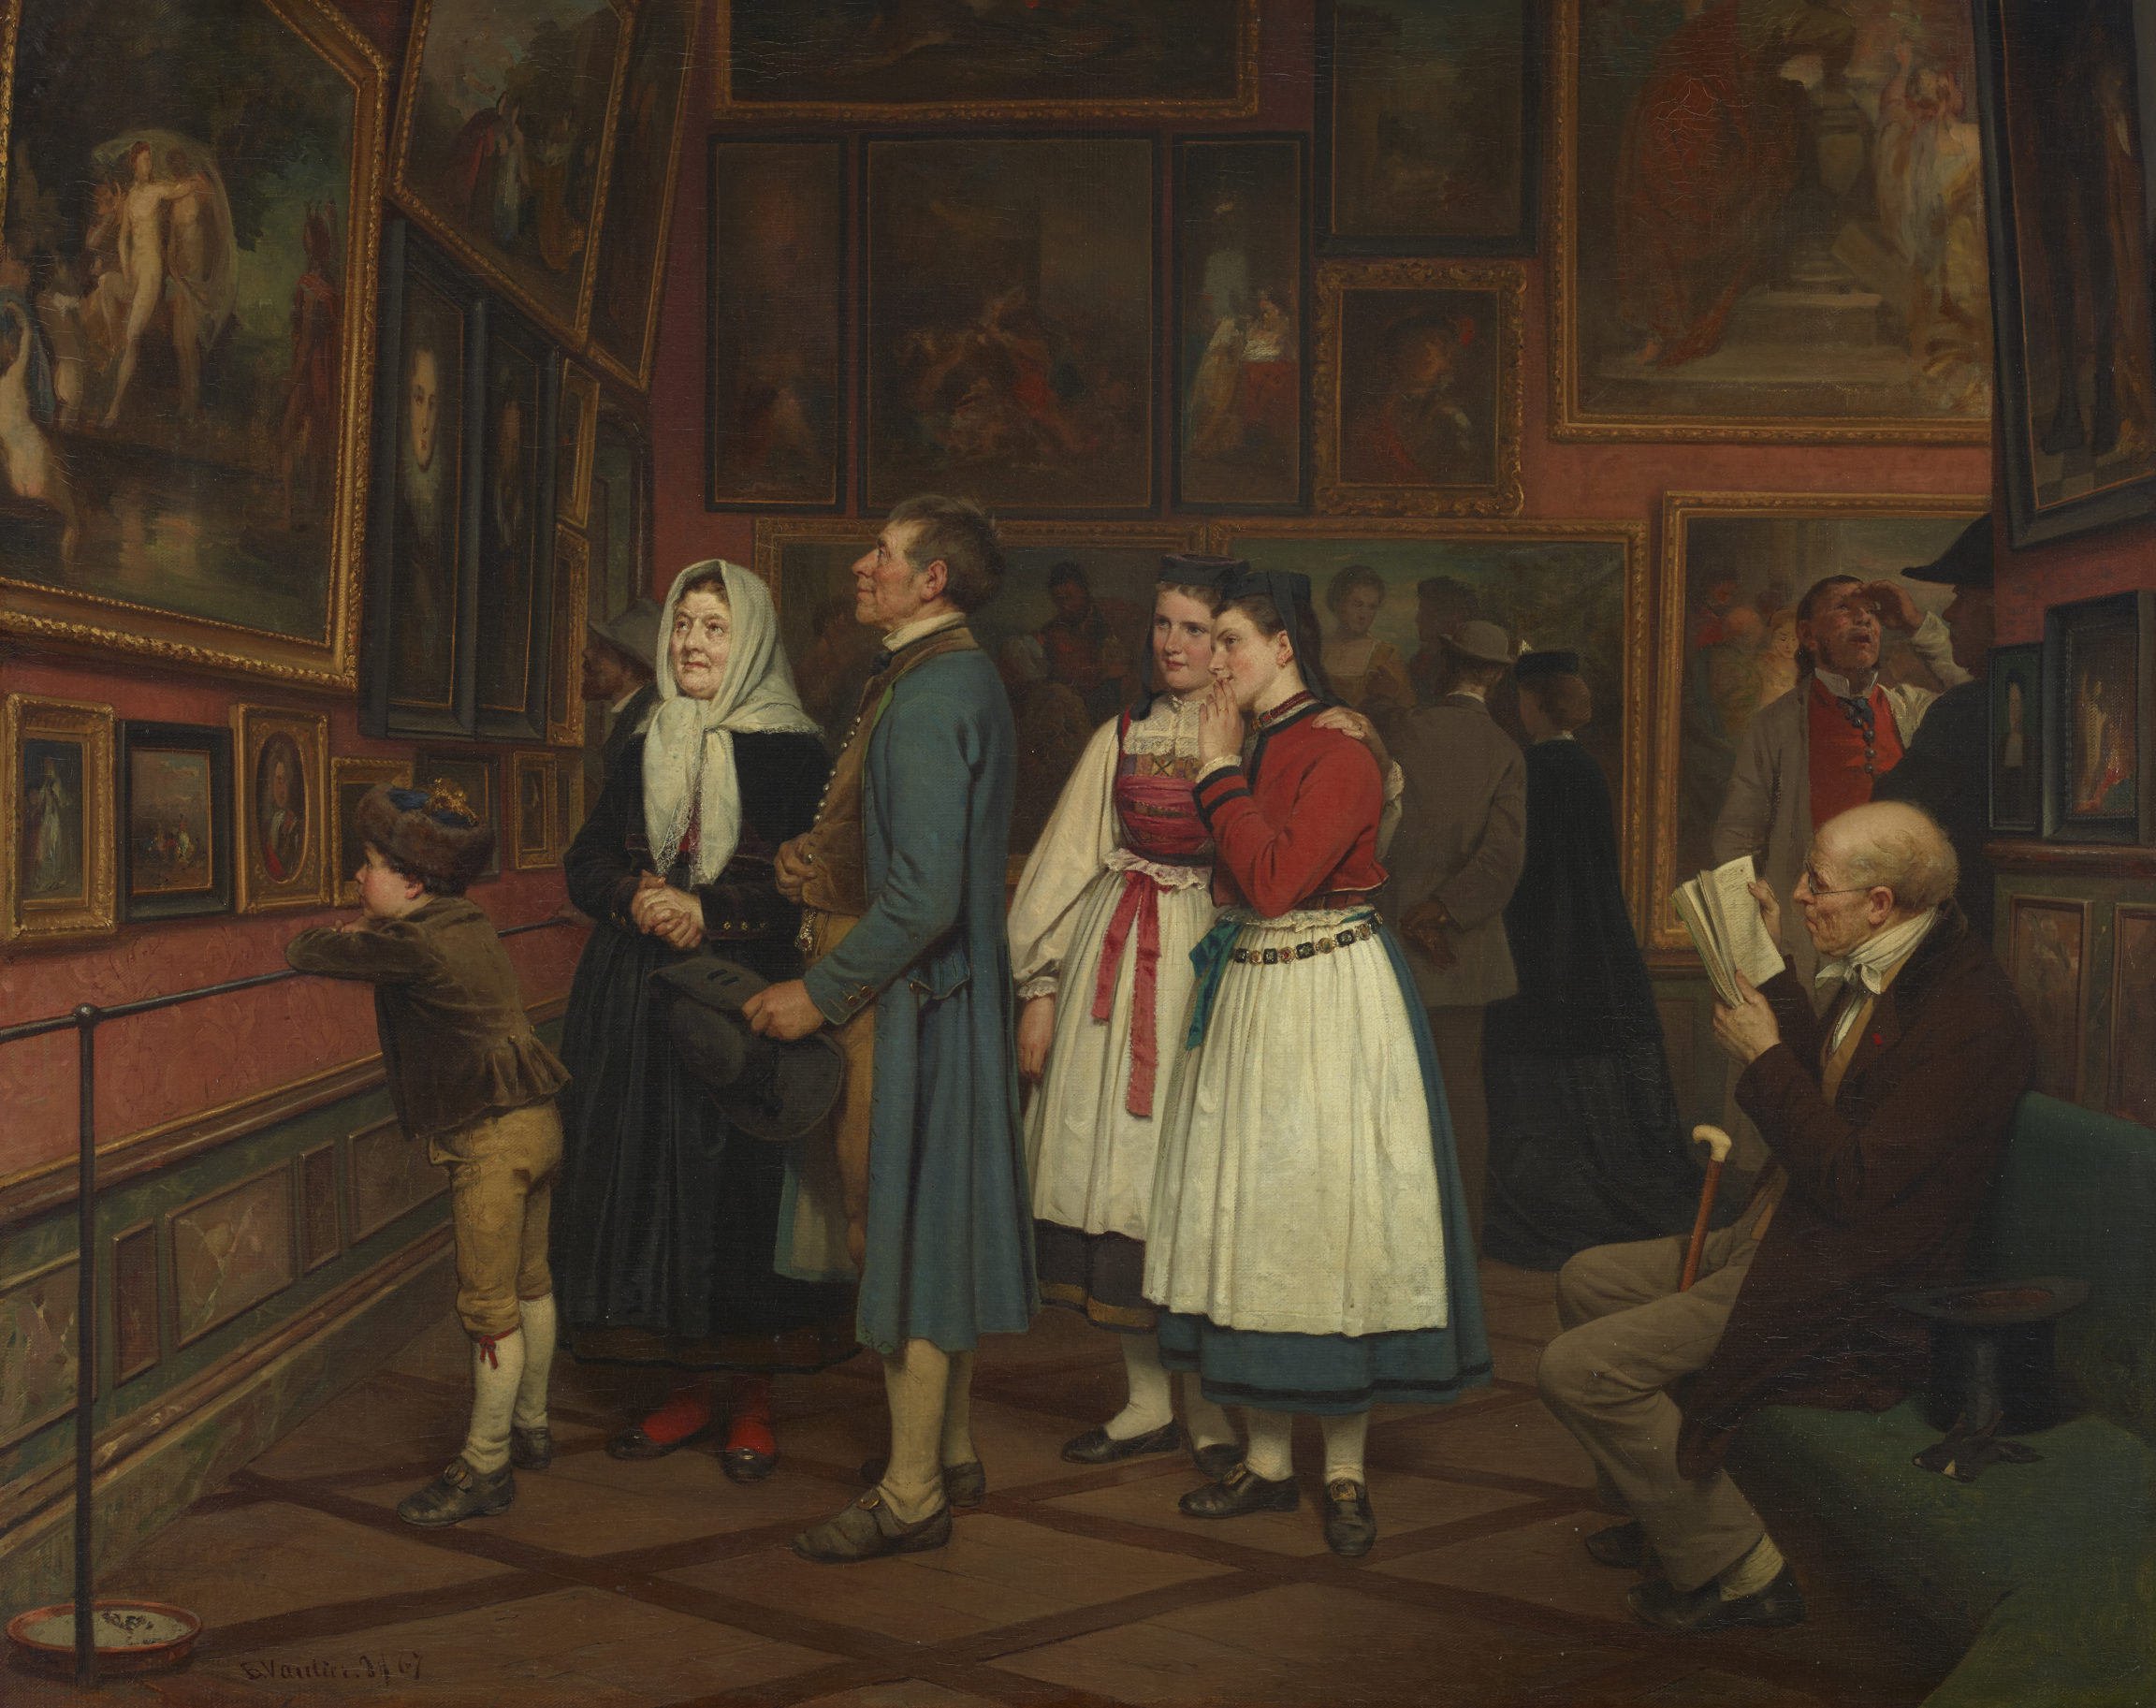 Marc Louis Benjamin Vautier (L'Aîné) , Paysans au musée or À l’exposition (Peasants at the Museum or At the Axhibition), 1867